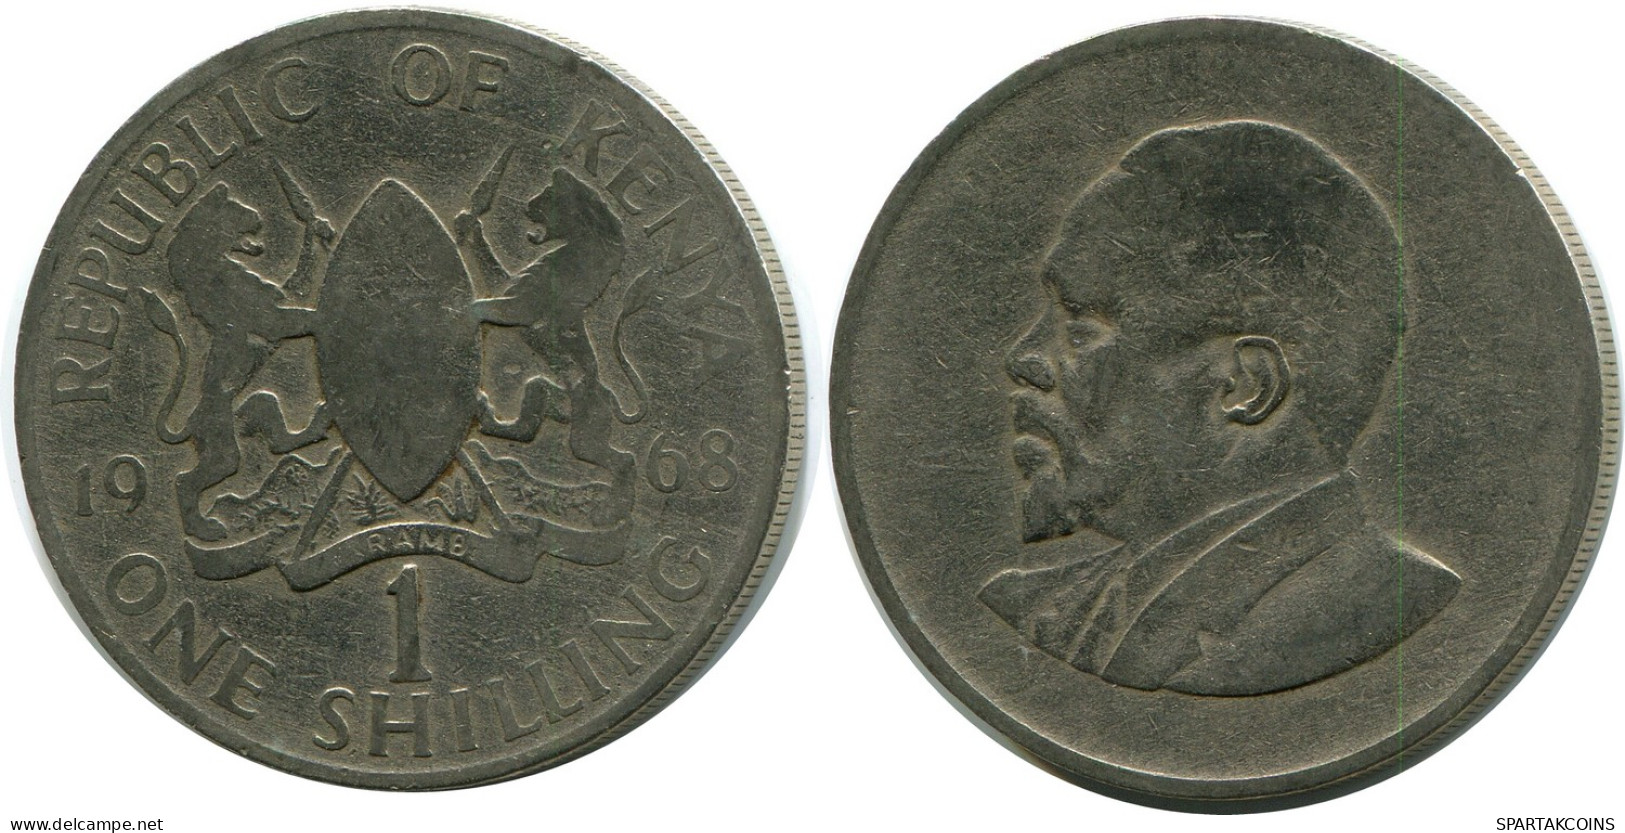 1 SHILLING 1968 KENYA Moneda #AZ185.E - Kenia